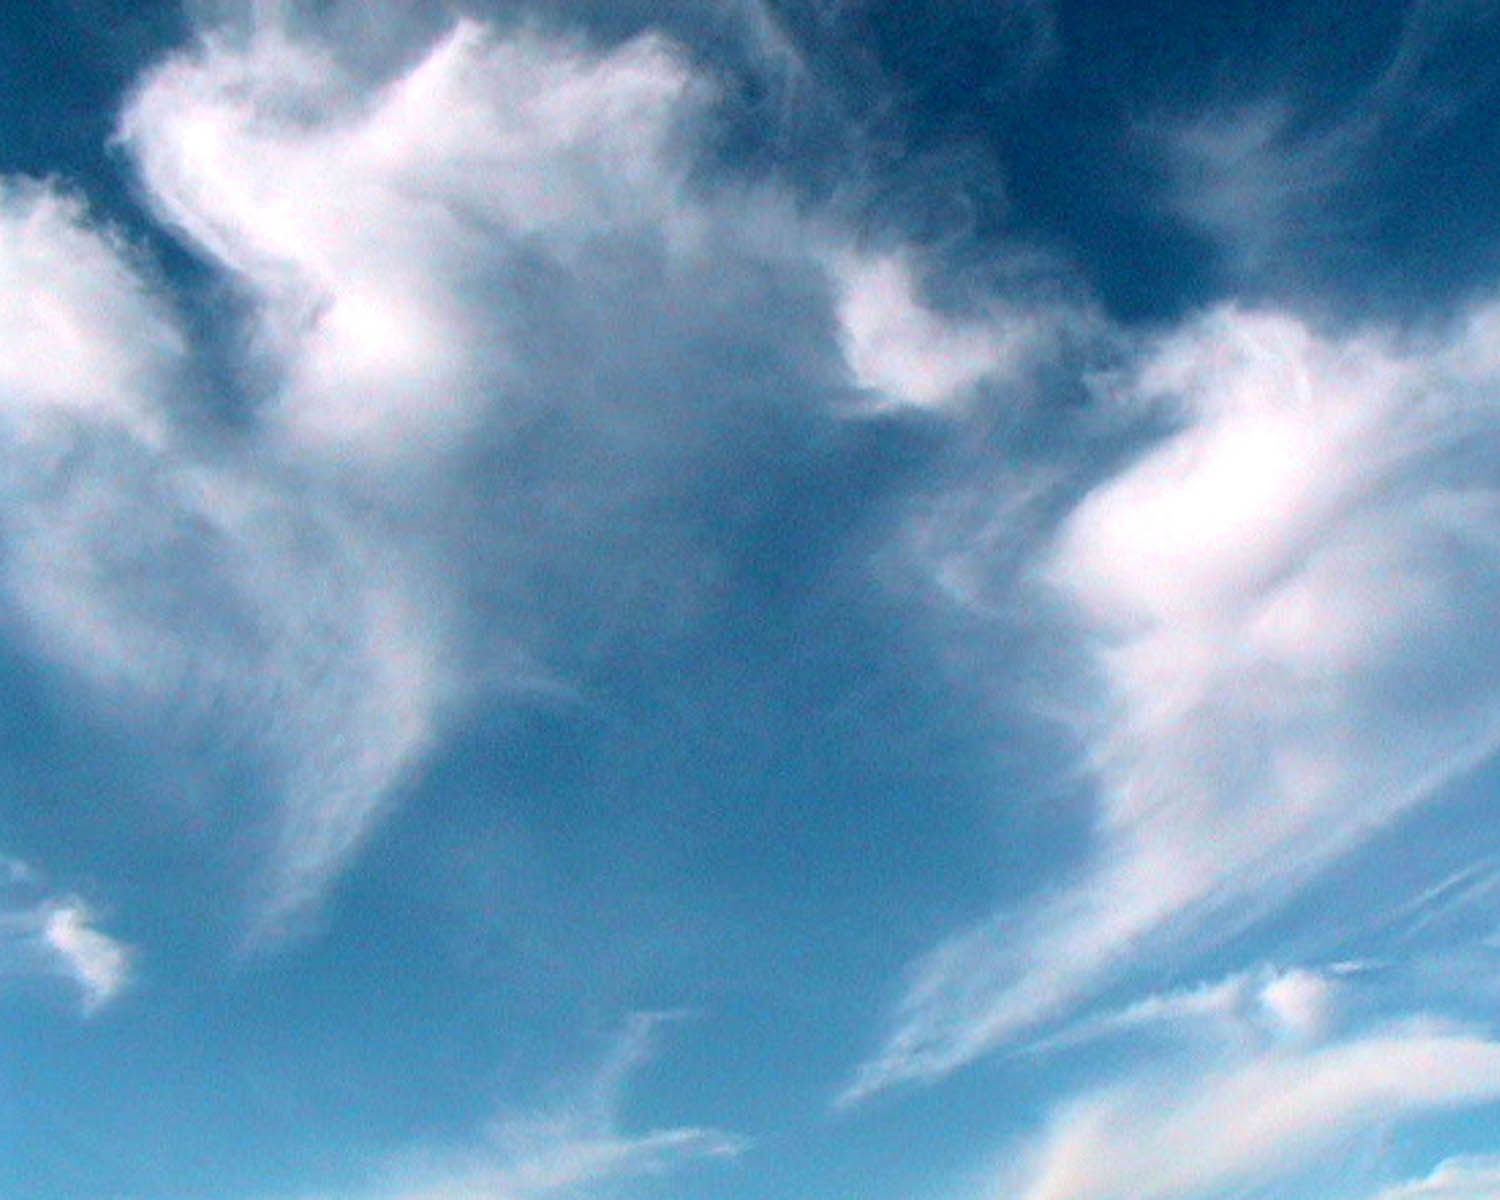 nền Đám mây, 610000+ một hình ảnh nền của Đám mây tải về miễn phí.